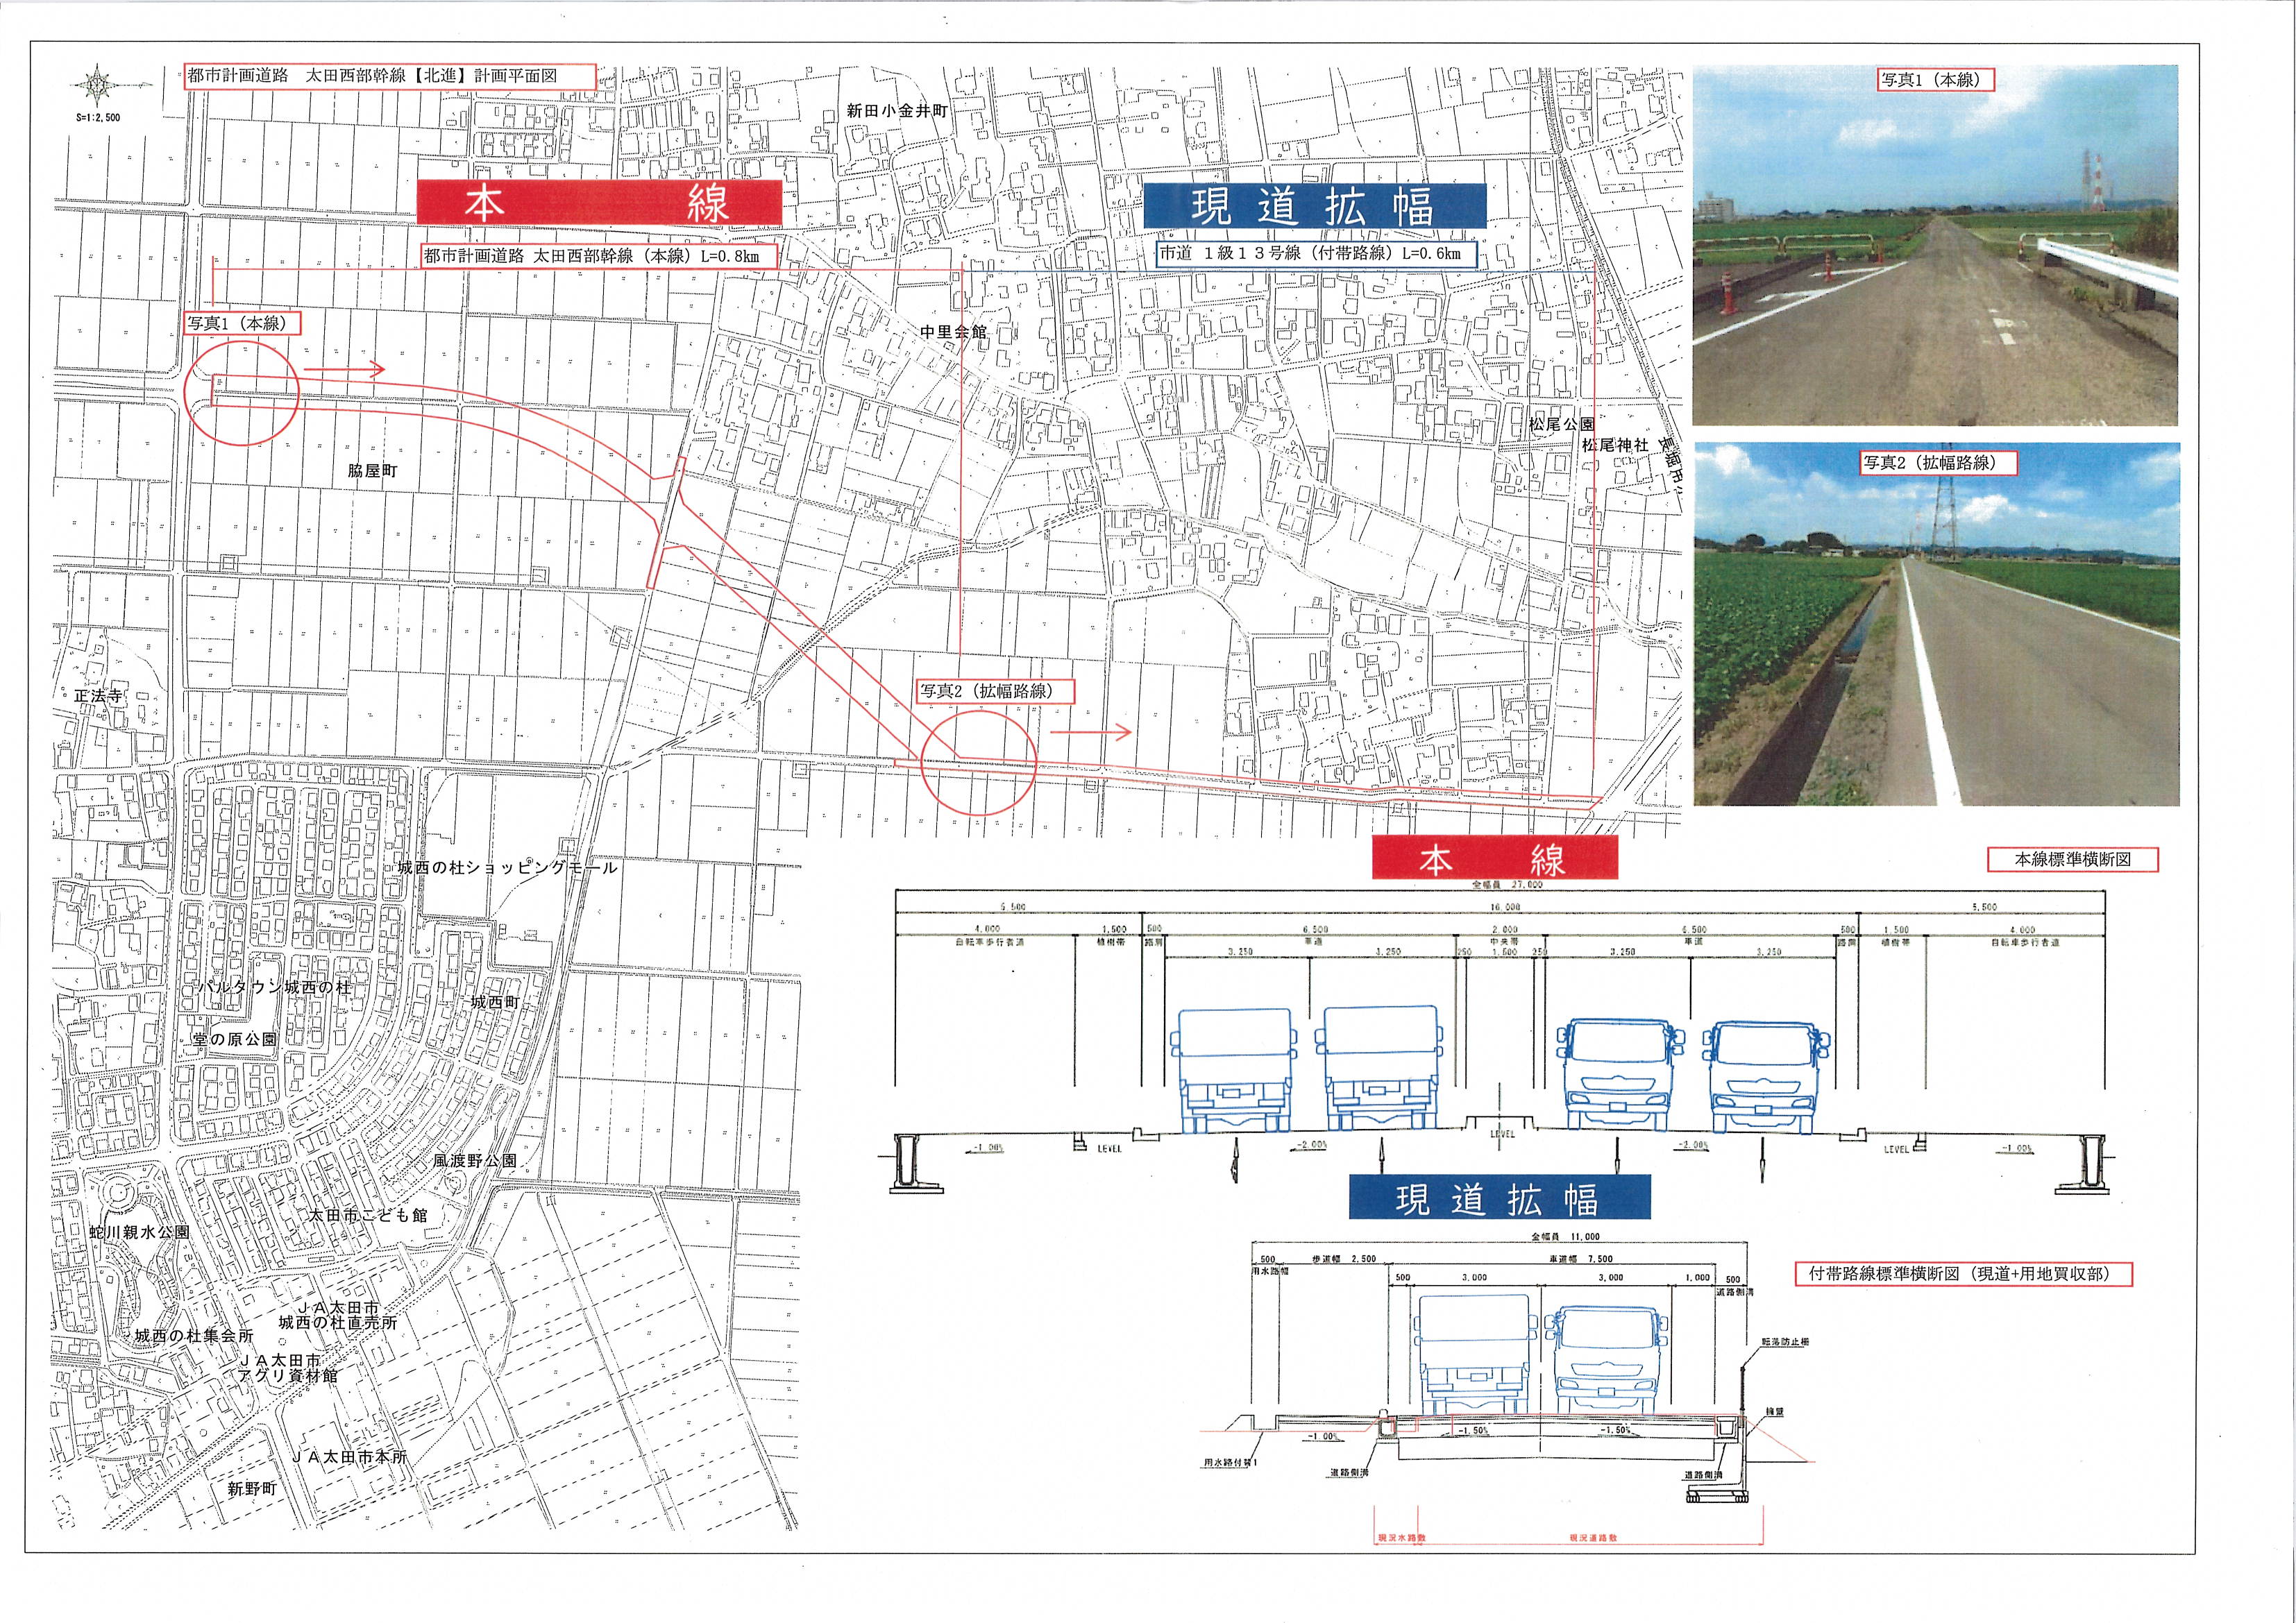 都市計画道路 太田西部幹線に関する事業説明資料の展開 - 太田市城西町 